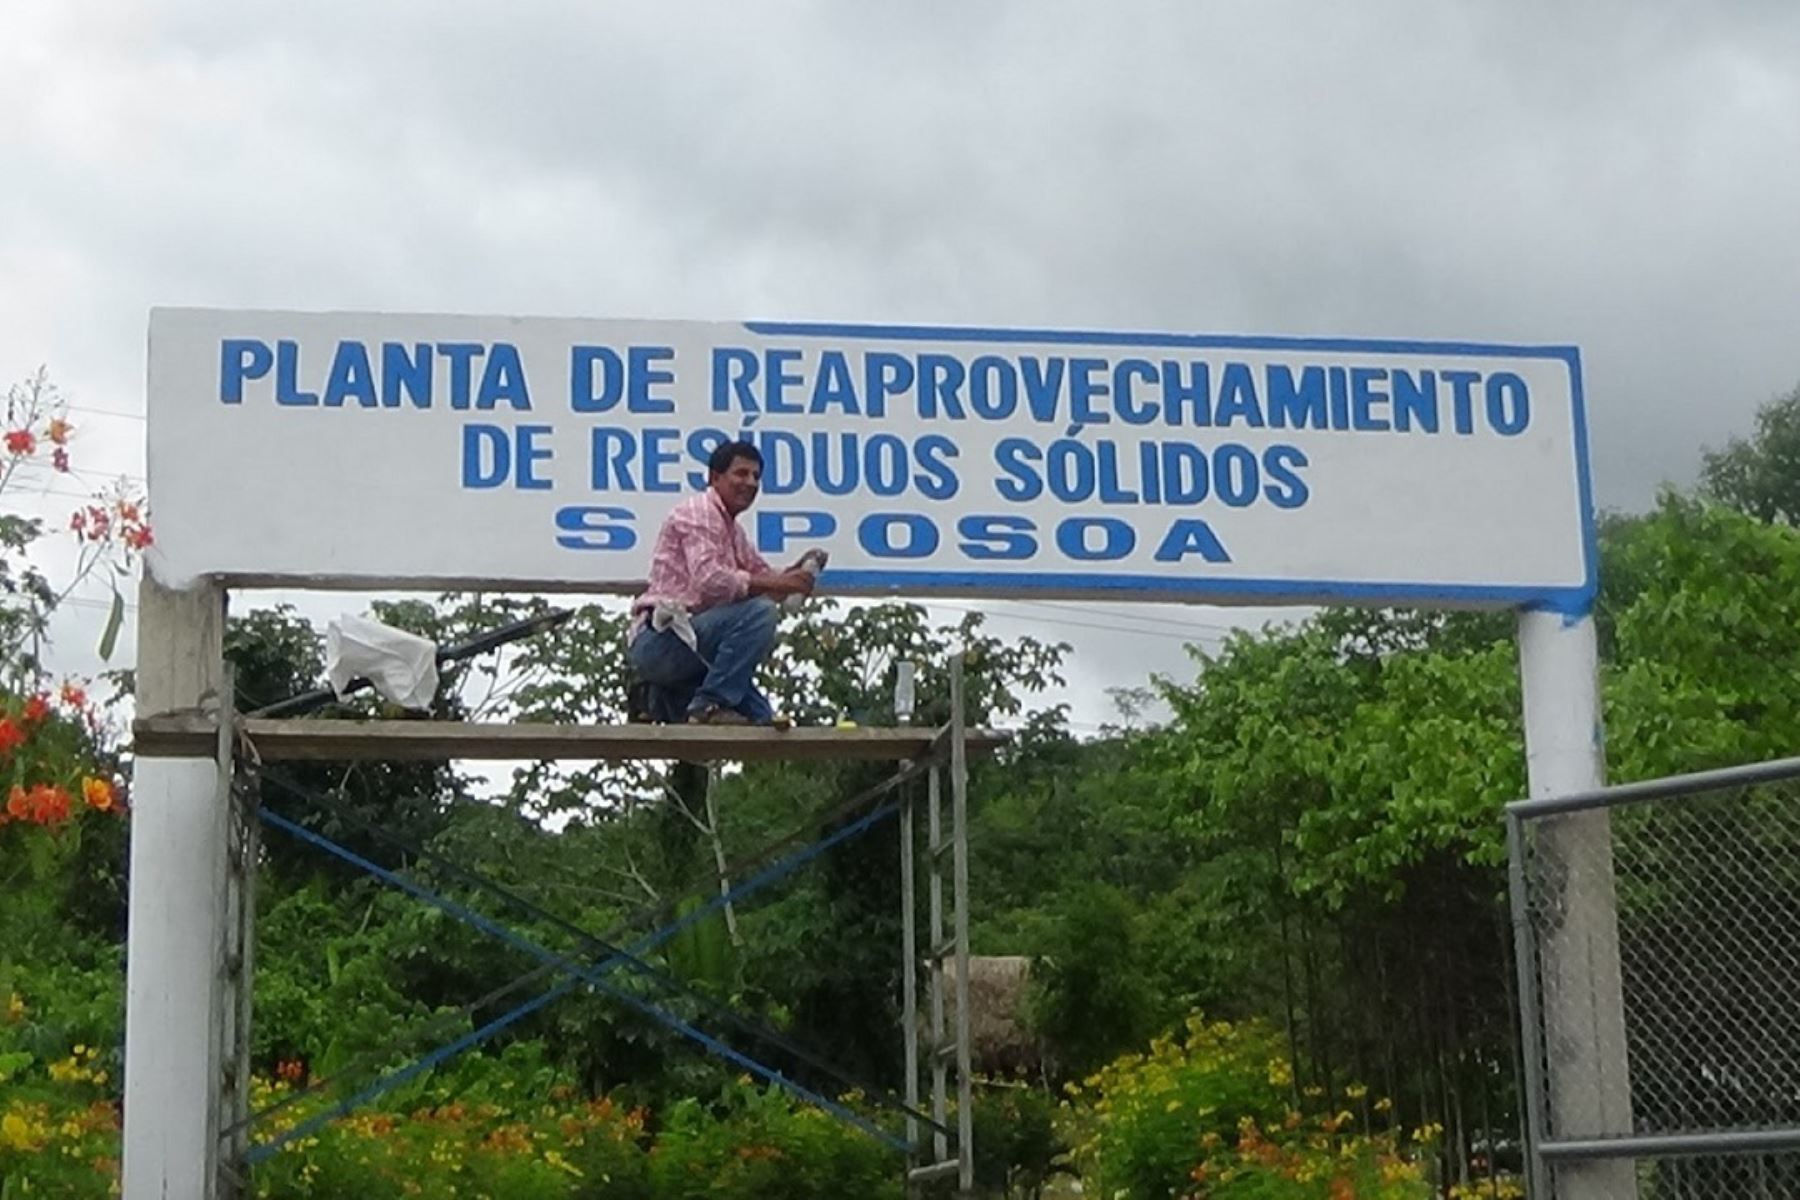 Inauguran planta de tratamiento de residuos sólidos en la provincia de Huallaga-Saposa, región San Martín. ANDINA